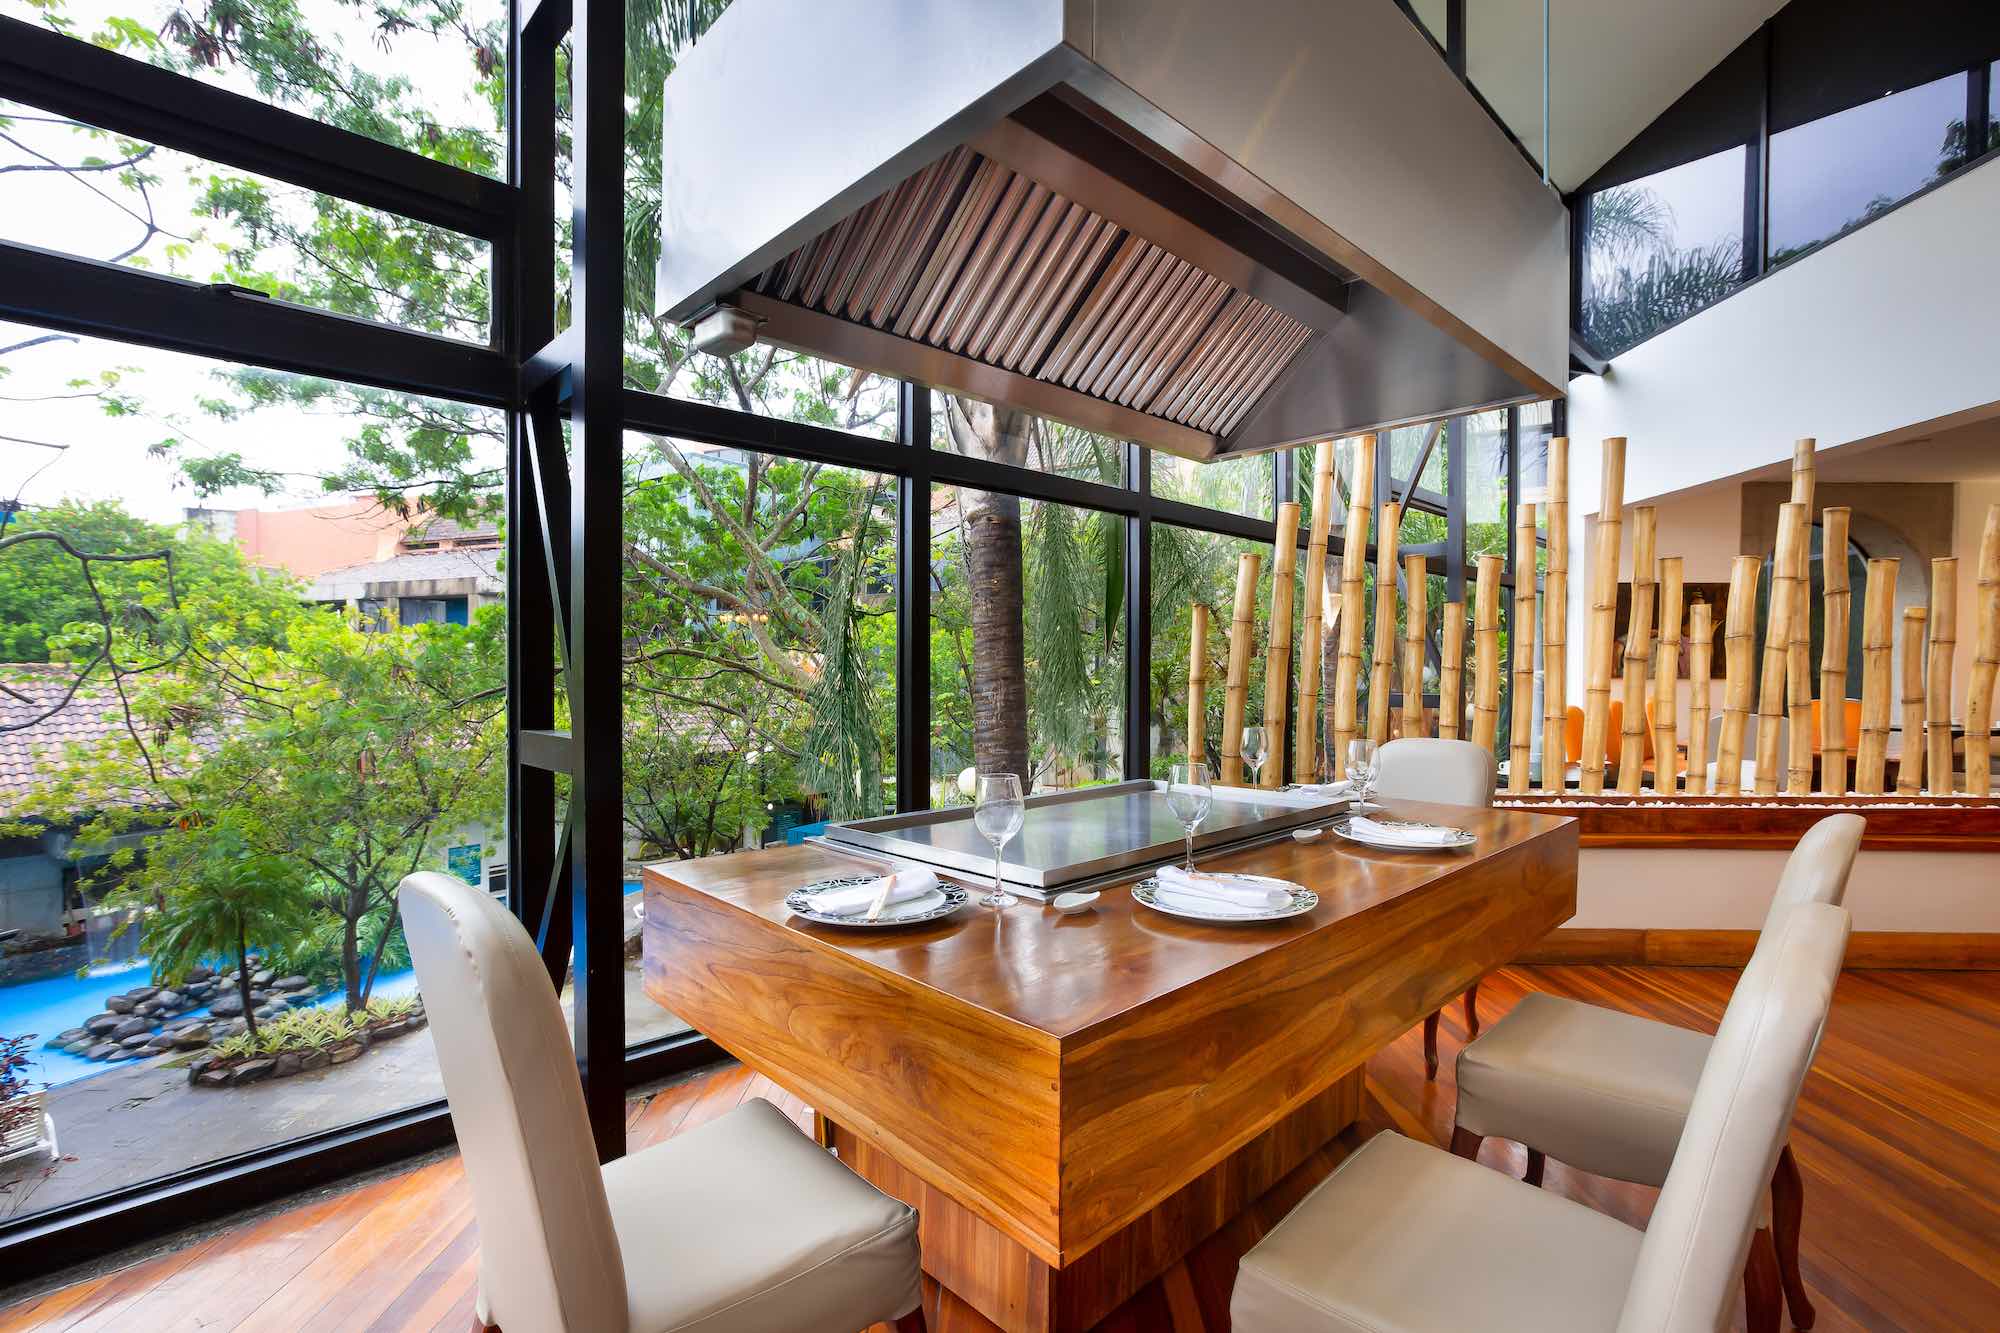 Hotel Radisson presentó su nuevo restaurante “Especias”, con ingredientes costarricenses y fusión de platillos tradicionales